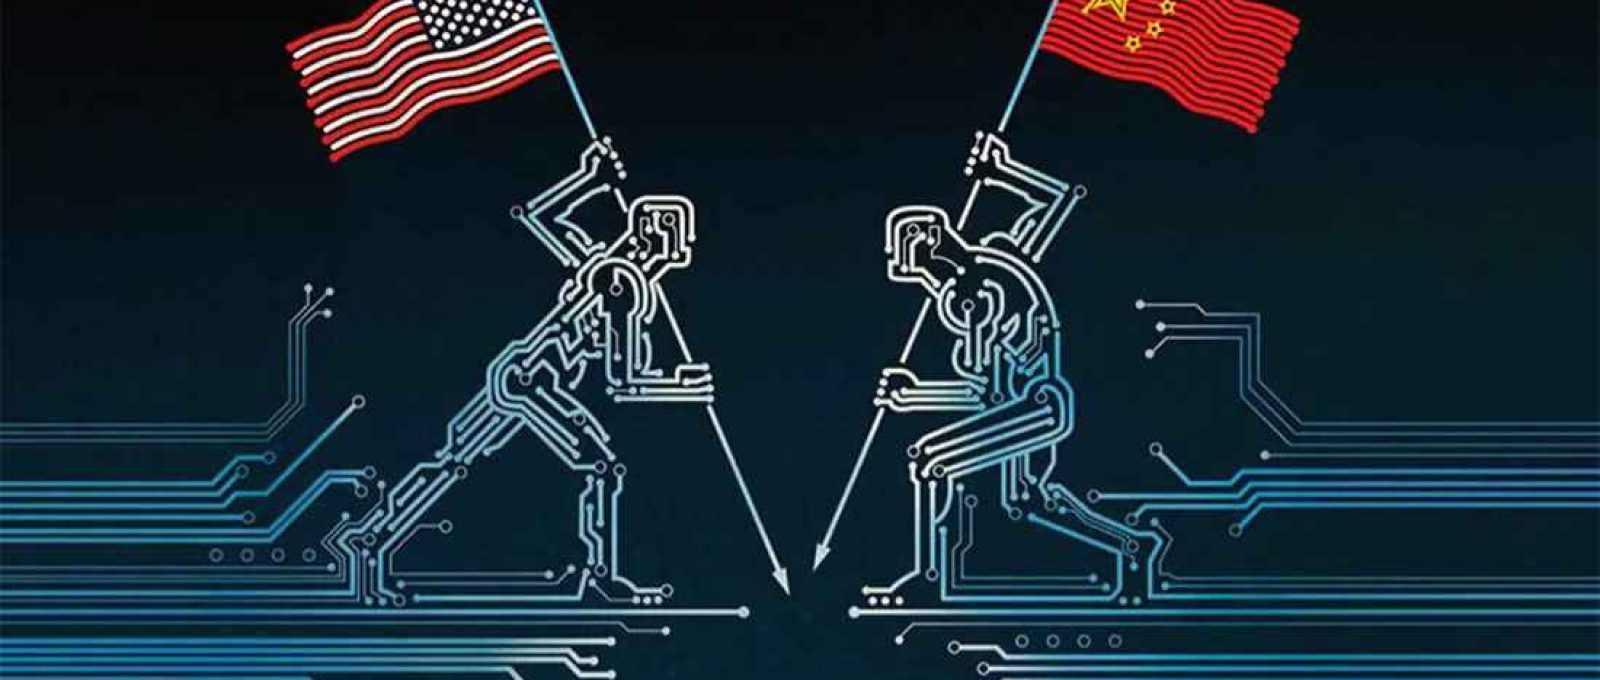 Os EUA e a China estão em guerra pela supremacia tecnológica (Facebook/Asia Times).